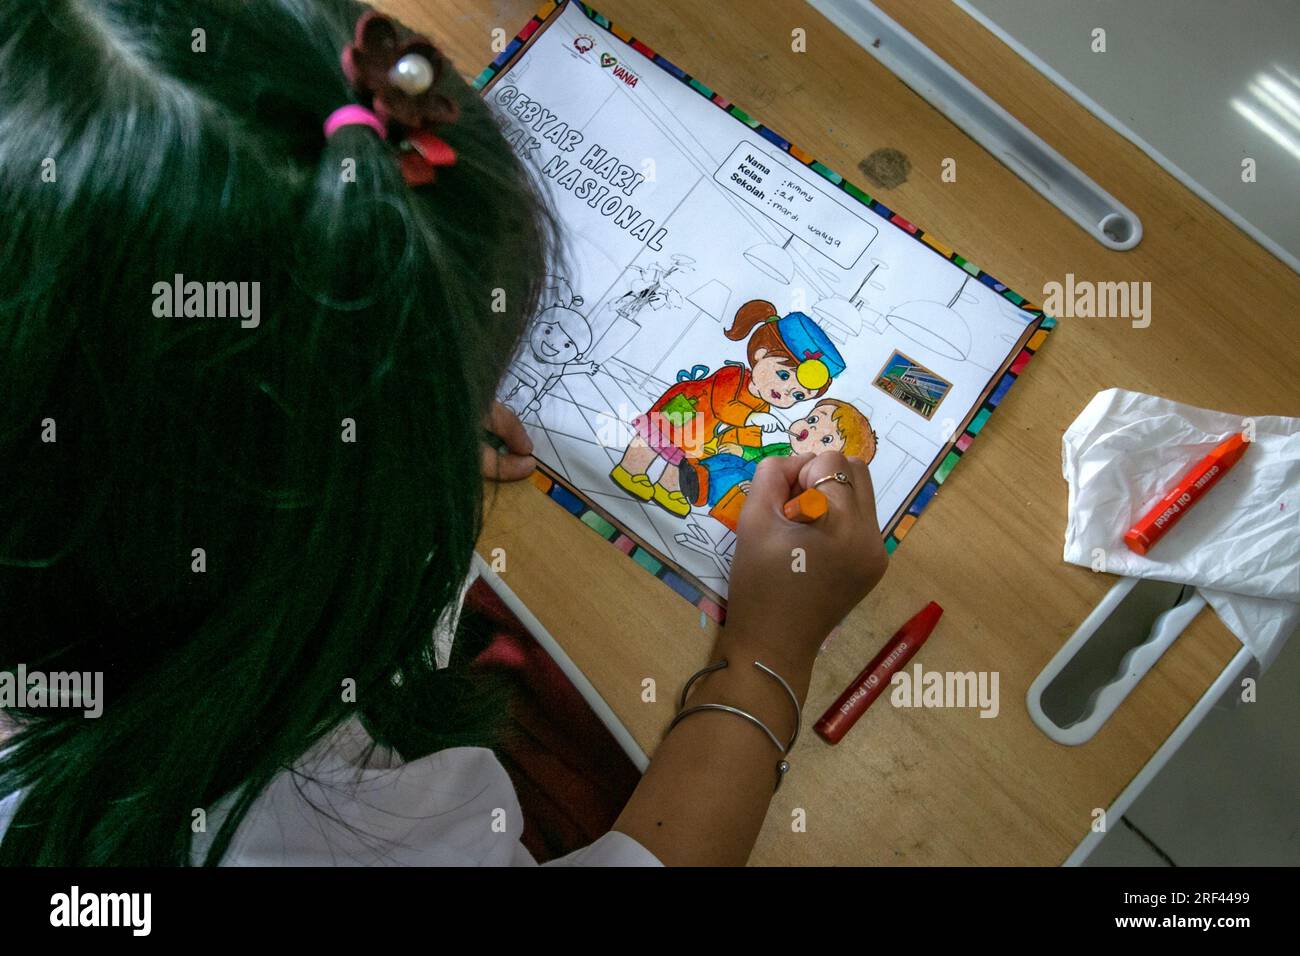 Gli studenti delle scuole elementari a Bogor City, Indonesia, svolgono attività di colorazione su immagini a tema sanitario mentre visitano l'ospedale Vania Bogor Foto Stock